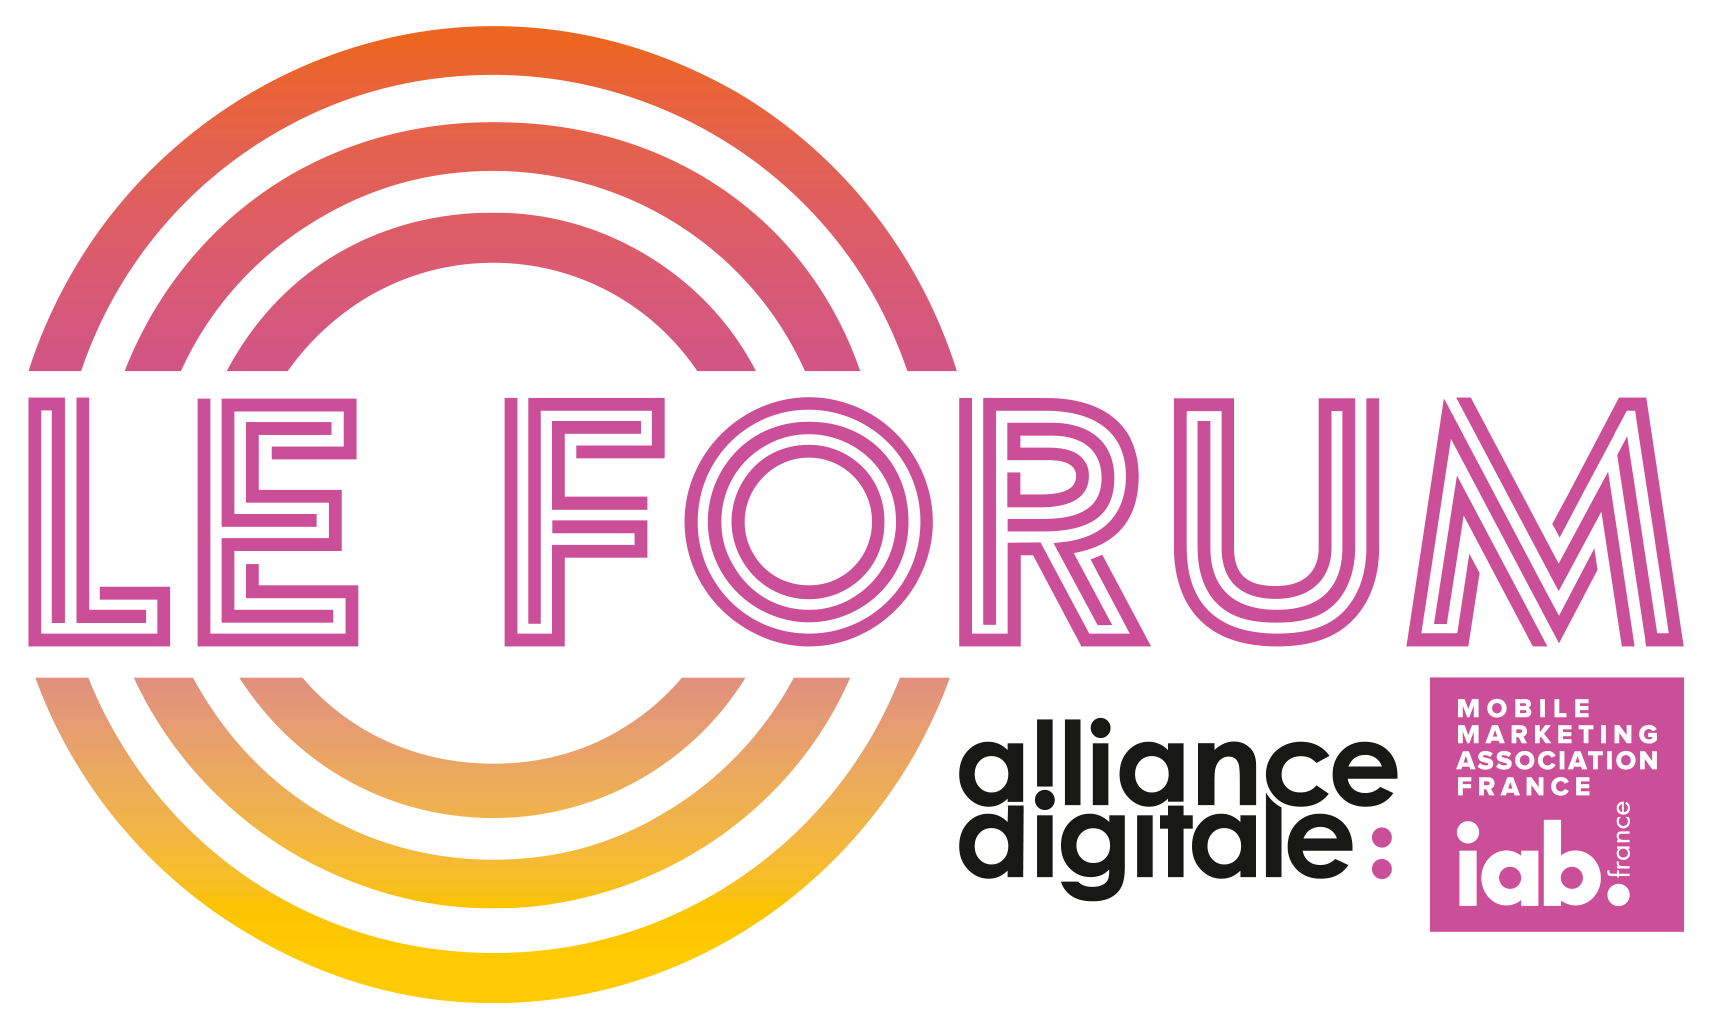 Le Forum d’Alliance Digitale